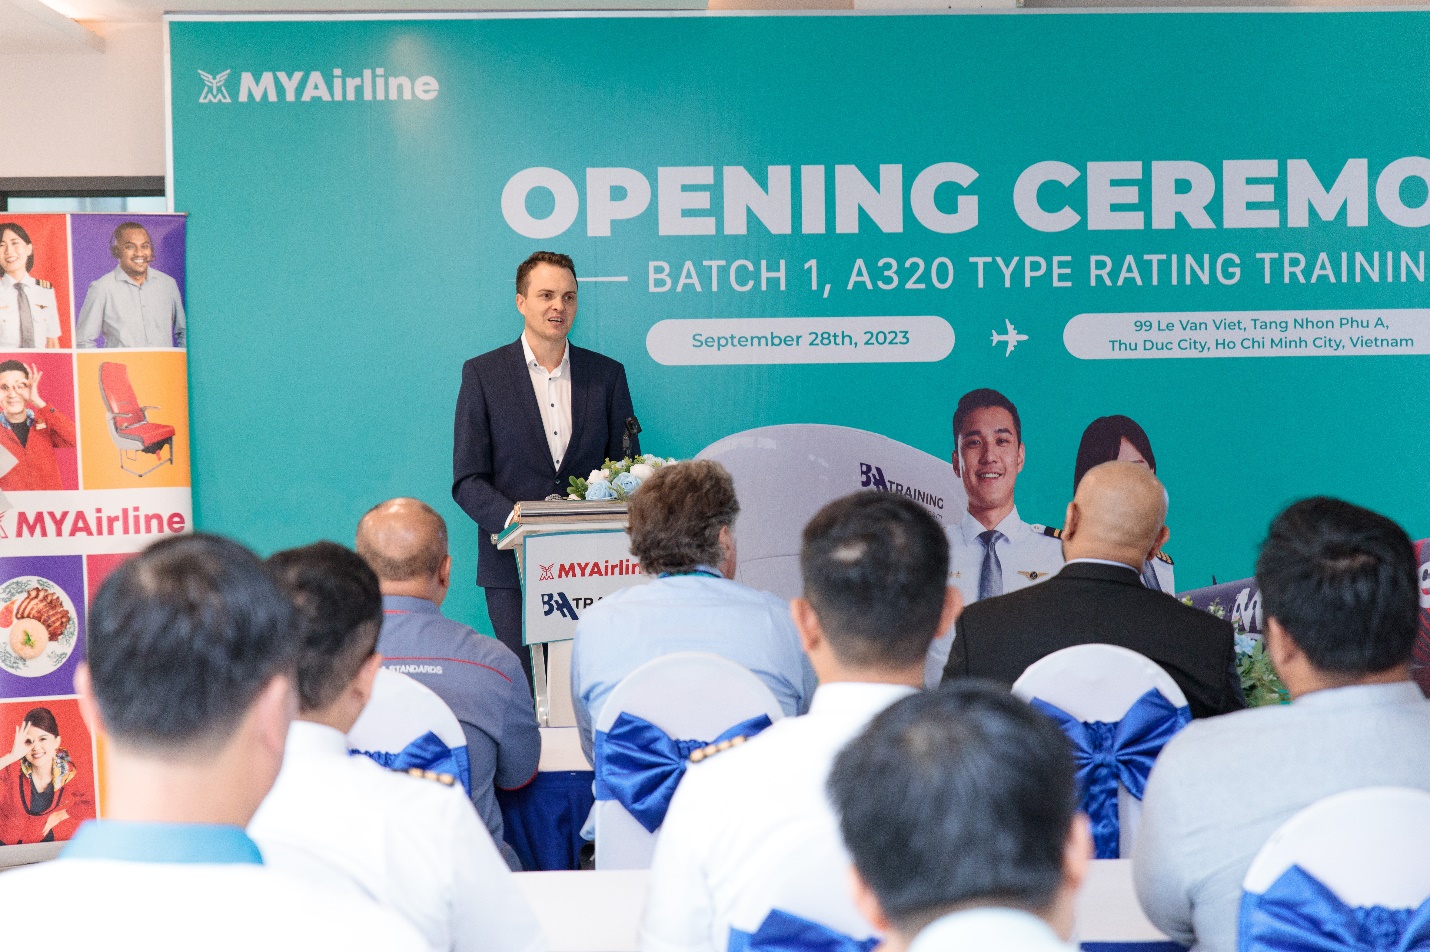 BAA Training Vietnam “bắt tay” hợp tác cùng hãng hàng không giá rẻ MYAirline - Ảnh 1.